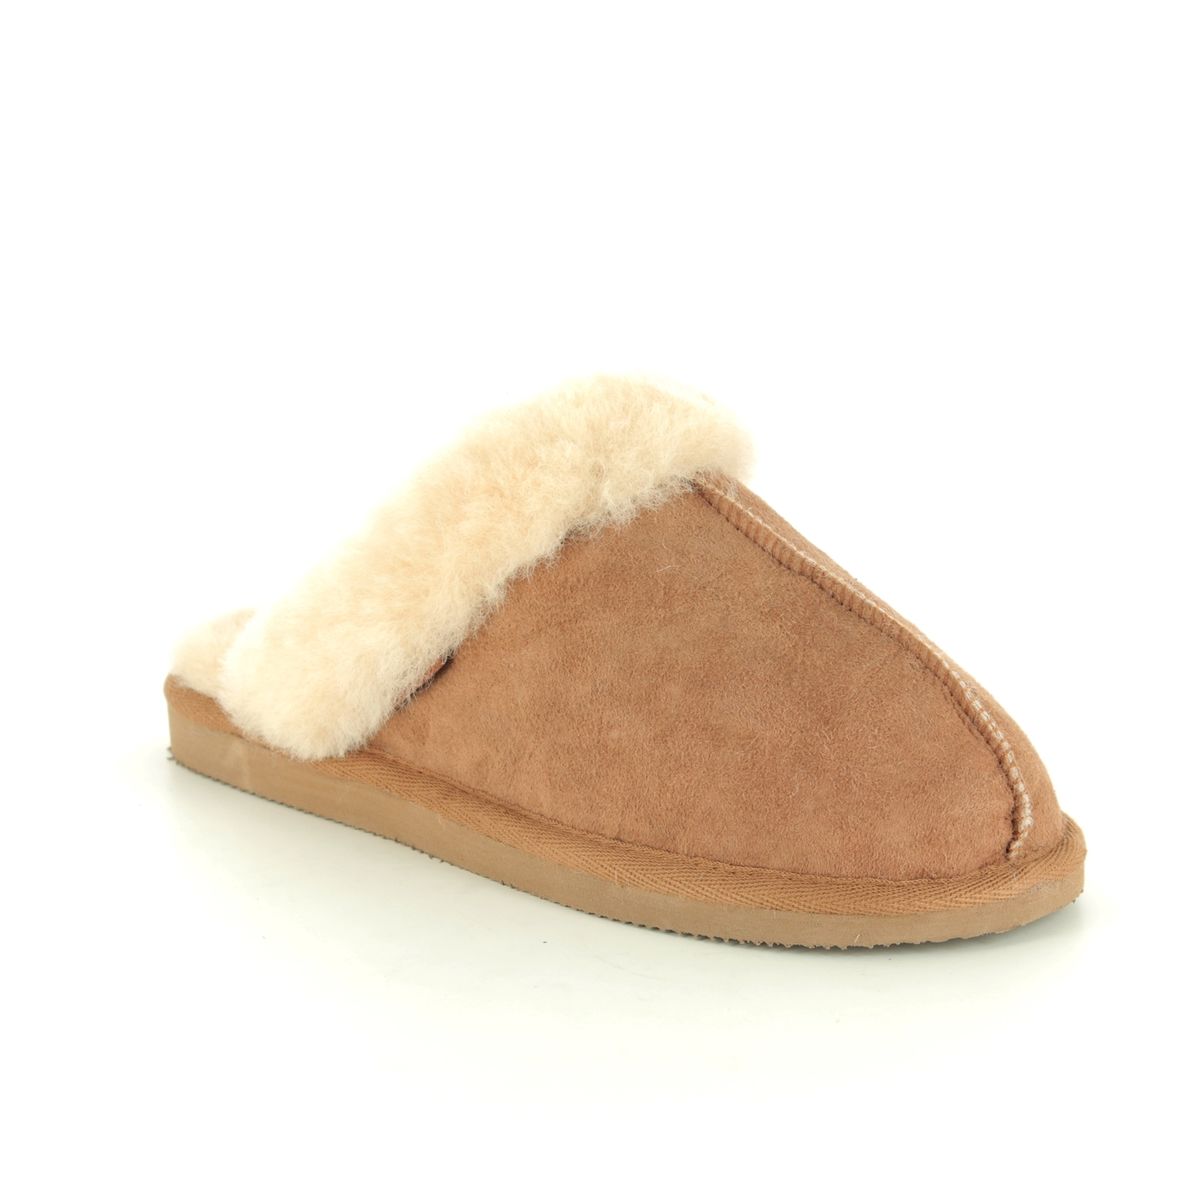 Shepherd of Sweden Jessica 468-056 Tan slippers